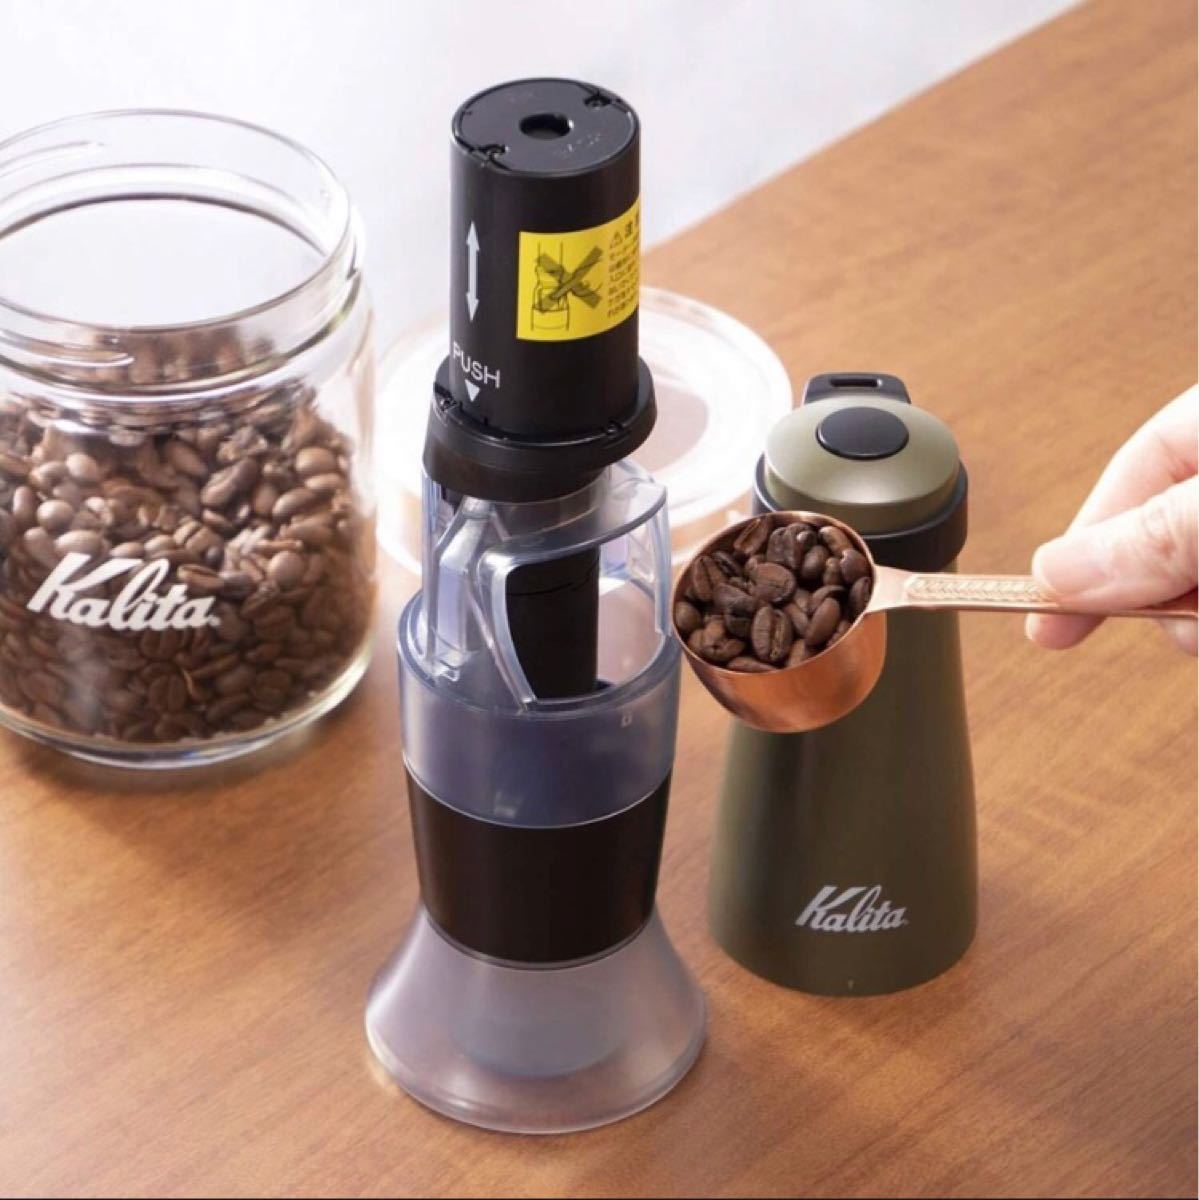 Kalita (カリタ) コーヒーミル 手挽き 電池式 コーヒーグラインダー アーミーグリーン スローG15 #43037